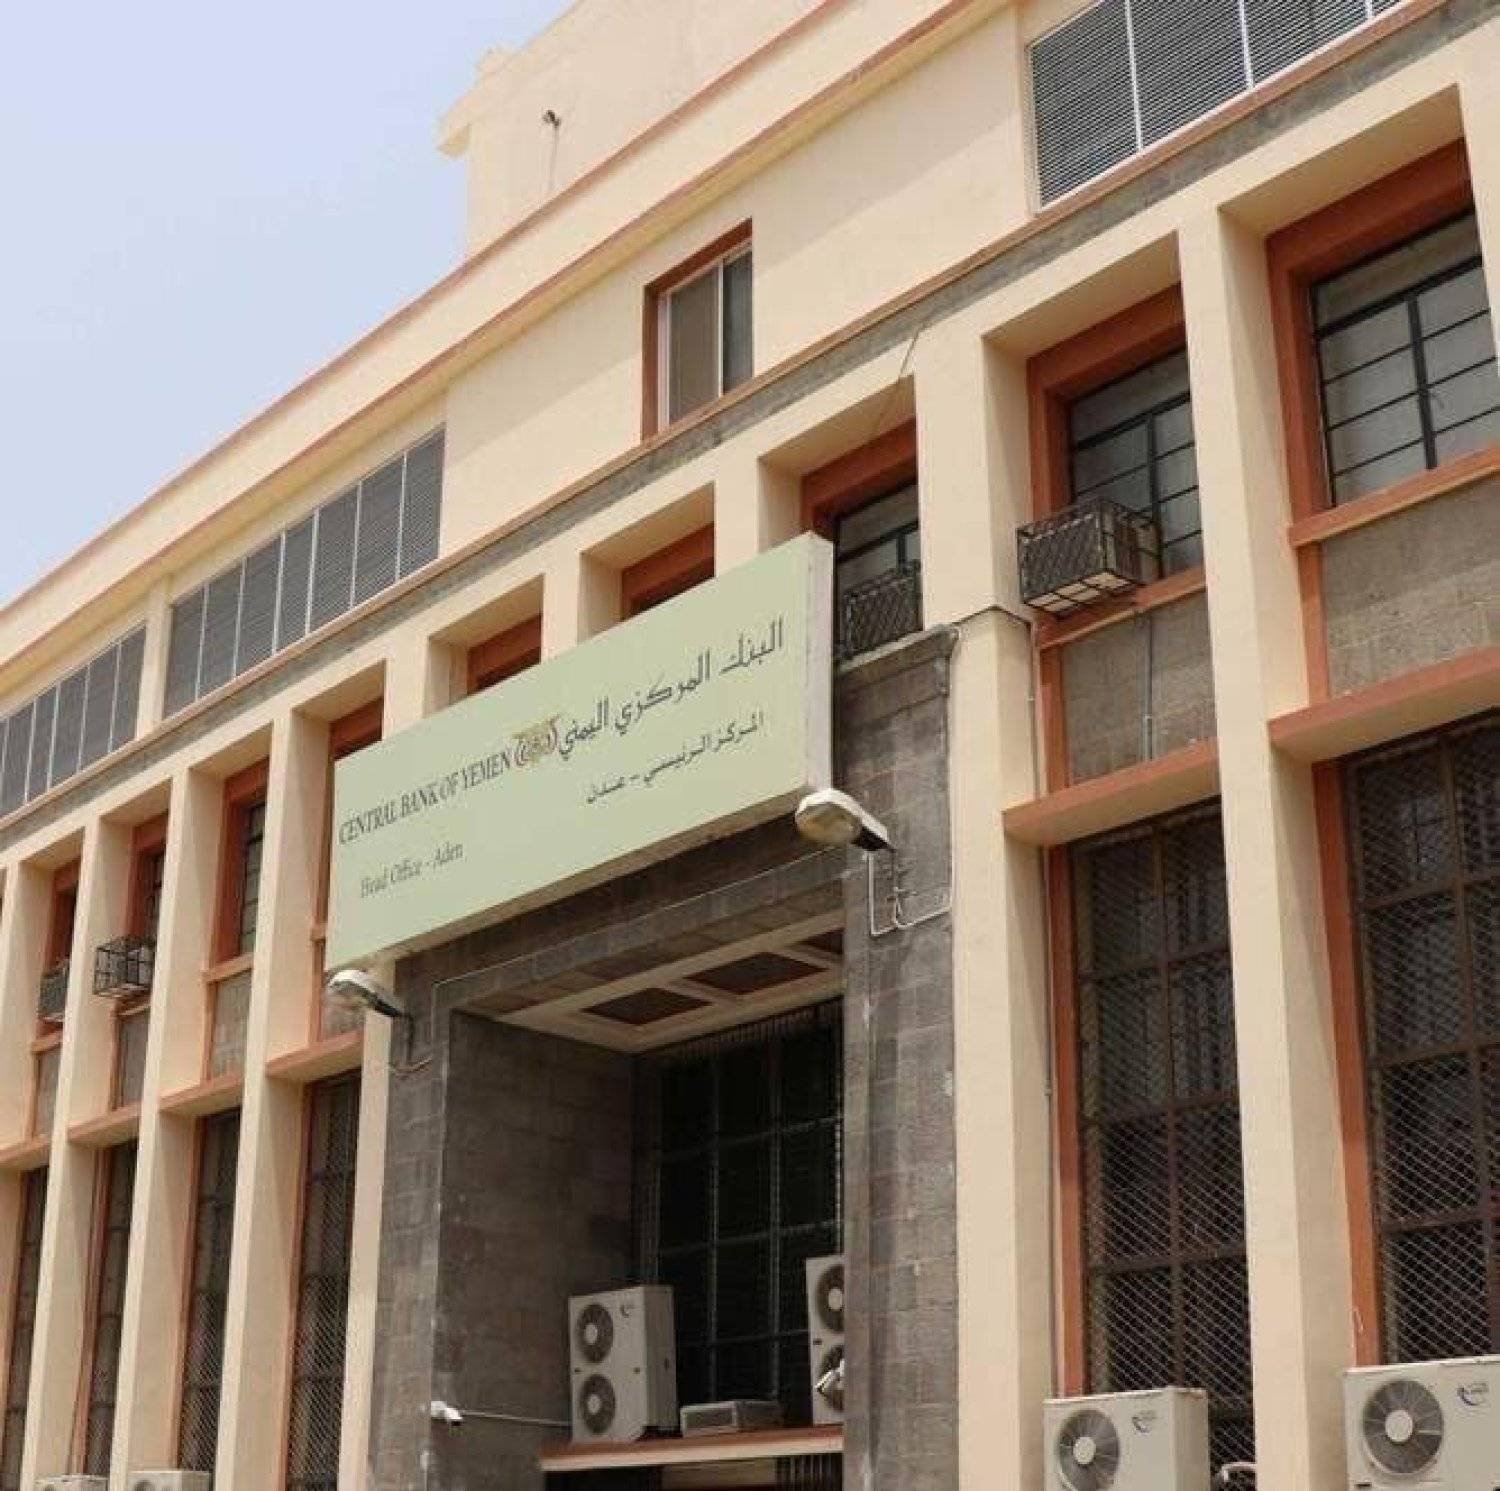 البنك المركزي اليمني تعهد بمواصلة مكافحة غسل الأموال وتمويل الإرهاب (إعلام حكومي)